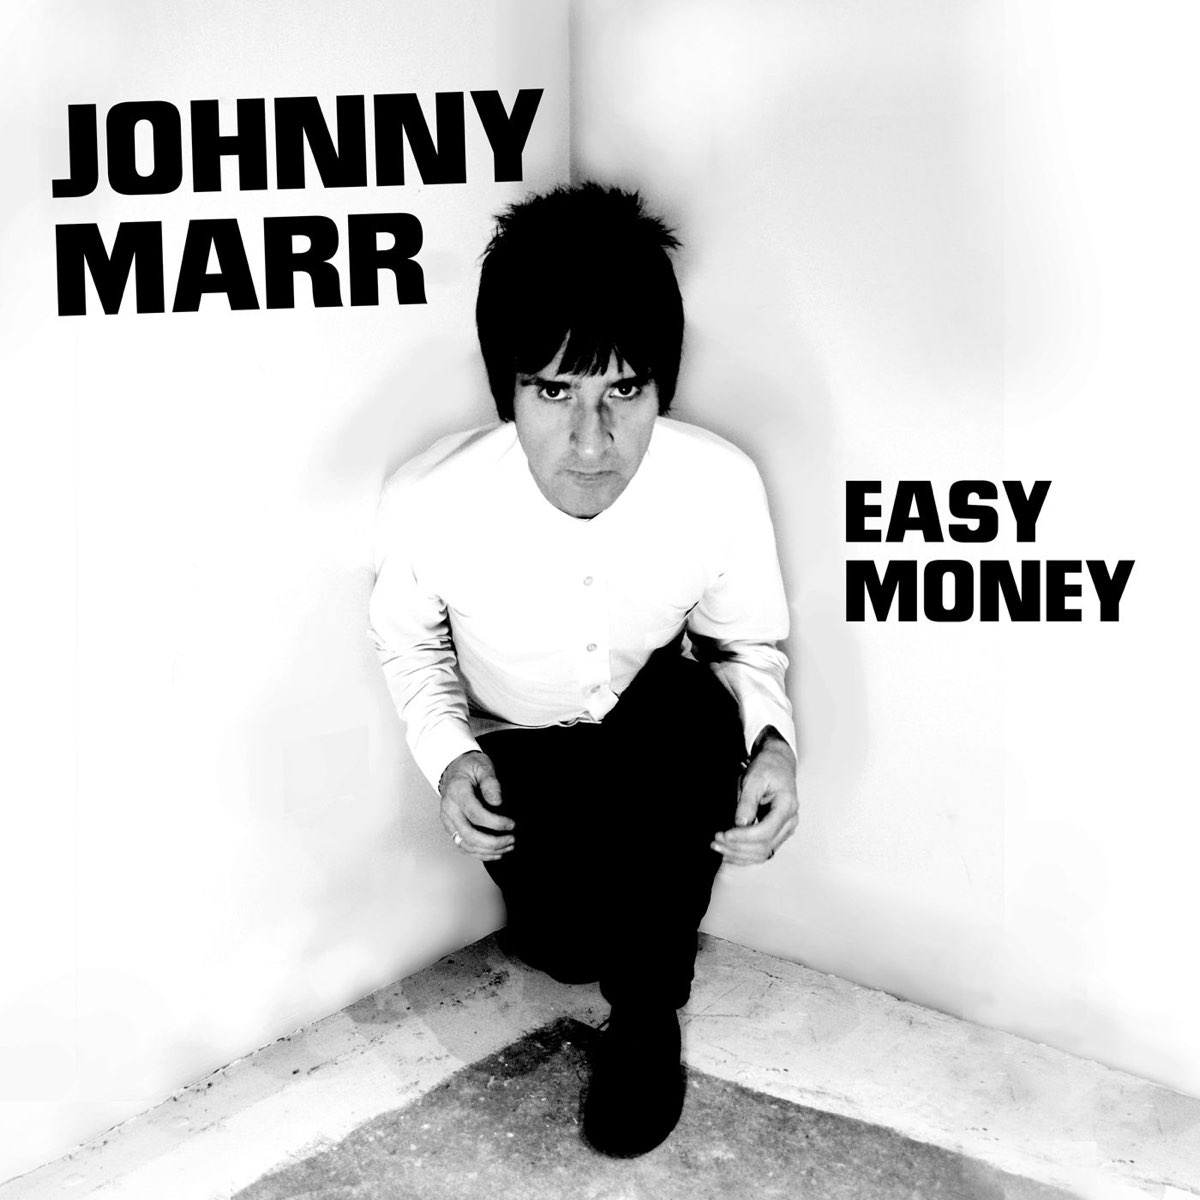 Джонни новый альбом. Marr Johnny "Adrenalin Baby". Johnny Marr Fever Dreams pts 1-4. Песня зарубежная Джонни. Песня джони ты такой крутой